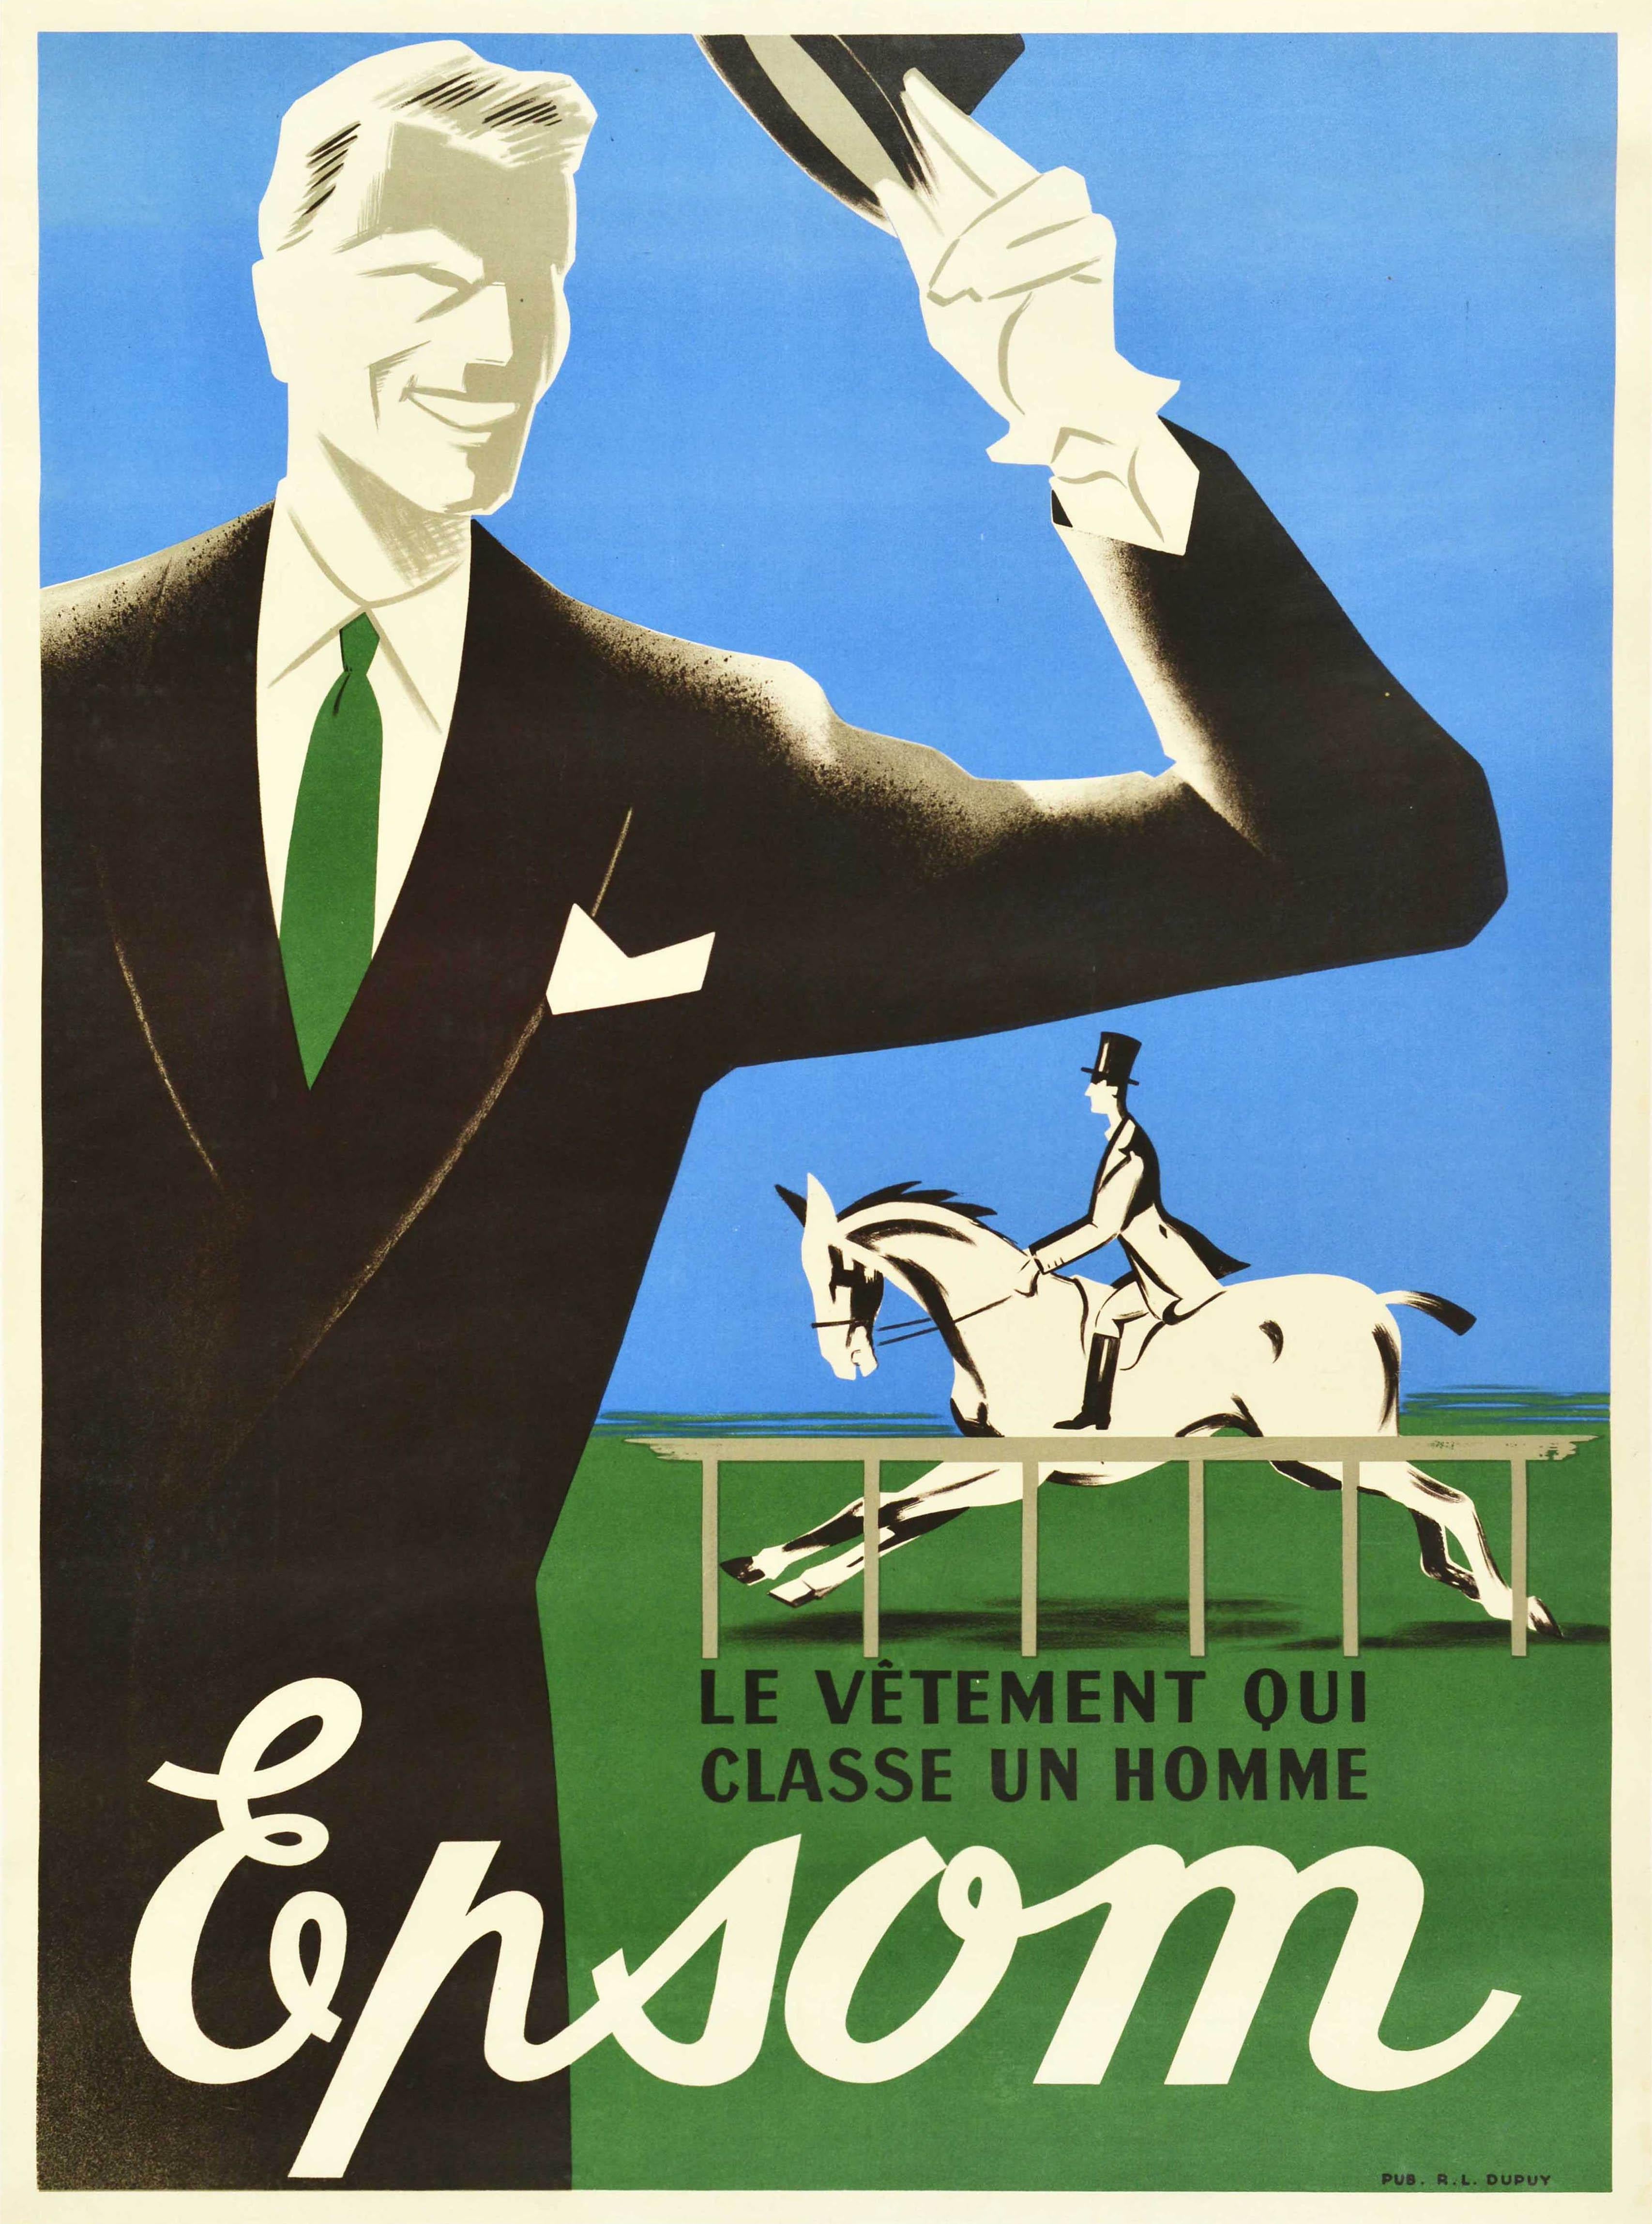 Unknown Print - Original Vintage Men's Fashion Poster Un Homme Epsom Man Style Horse Race Design